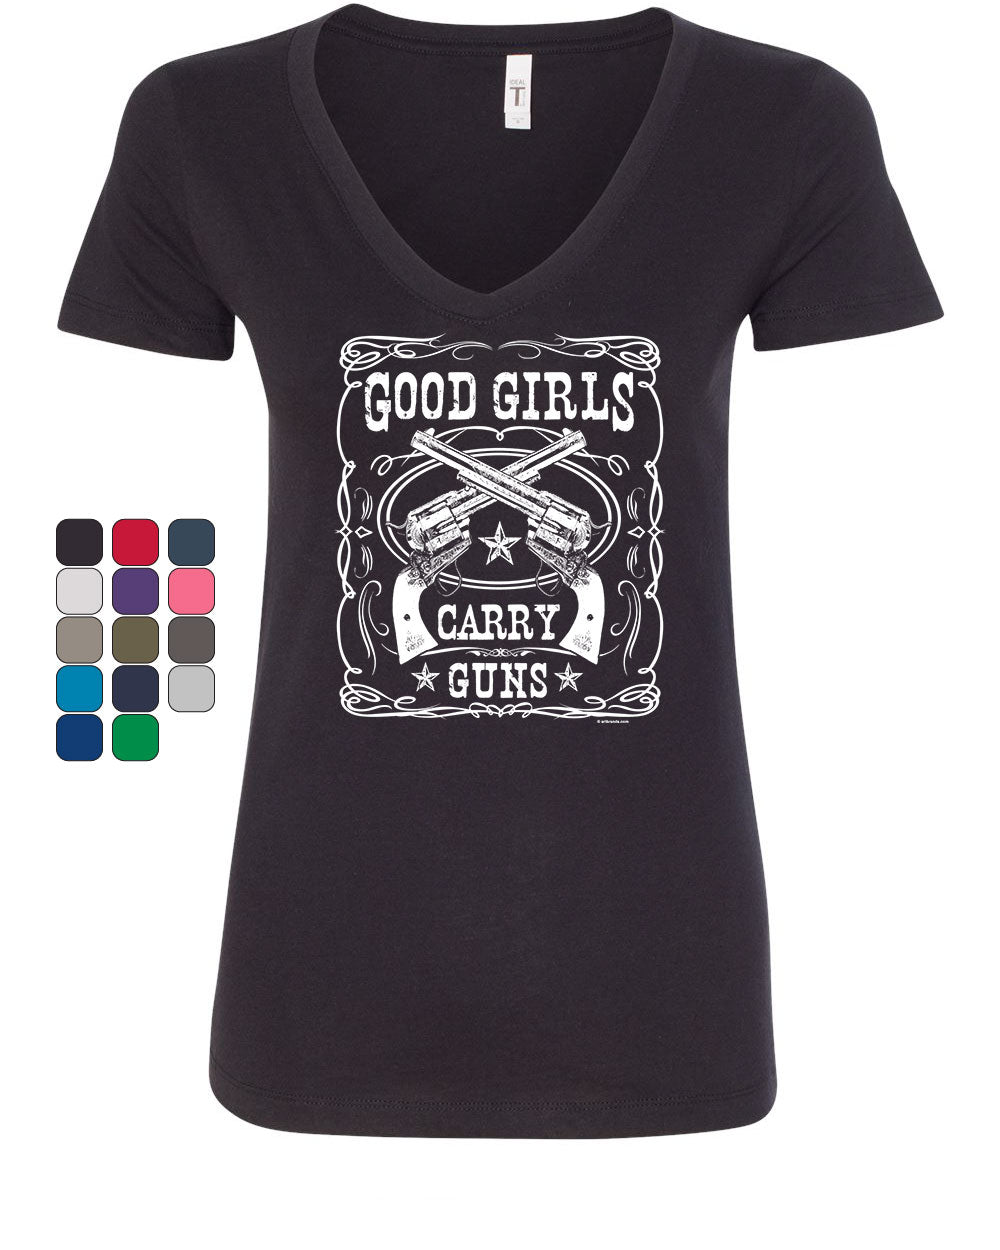 Good Girls Carry Guns Women's V-Neck T-Shirt 2A Girls With Guns 2nd ...